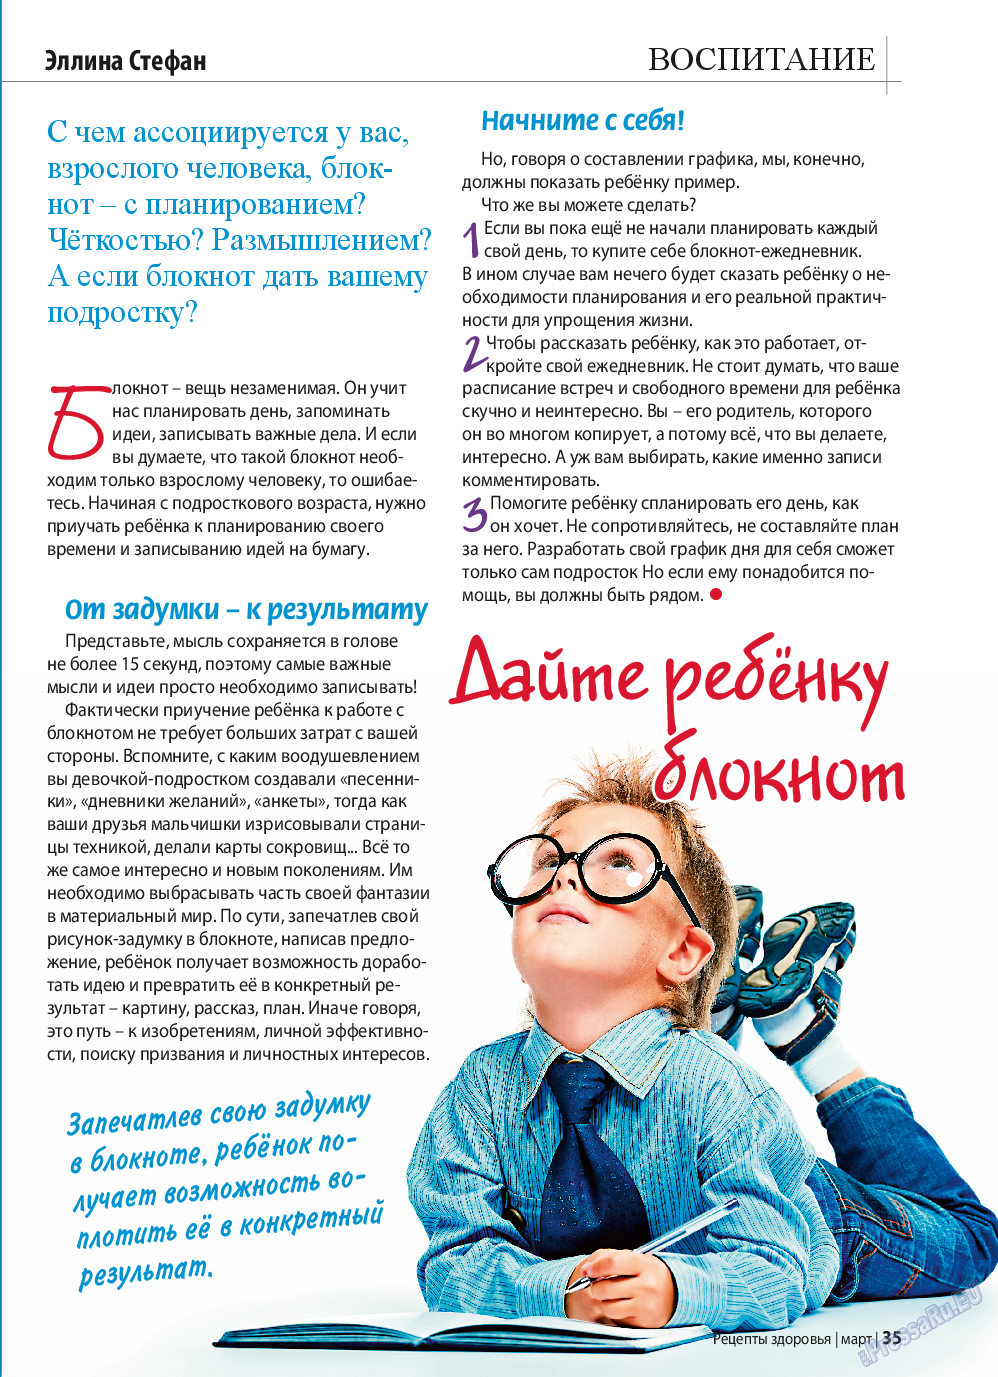 Рецепты здоровья, журнал. 2015 №70 стр.35